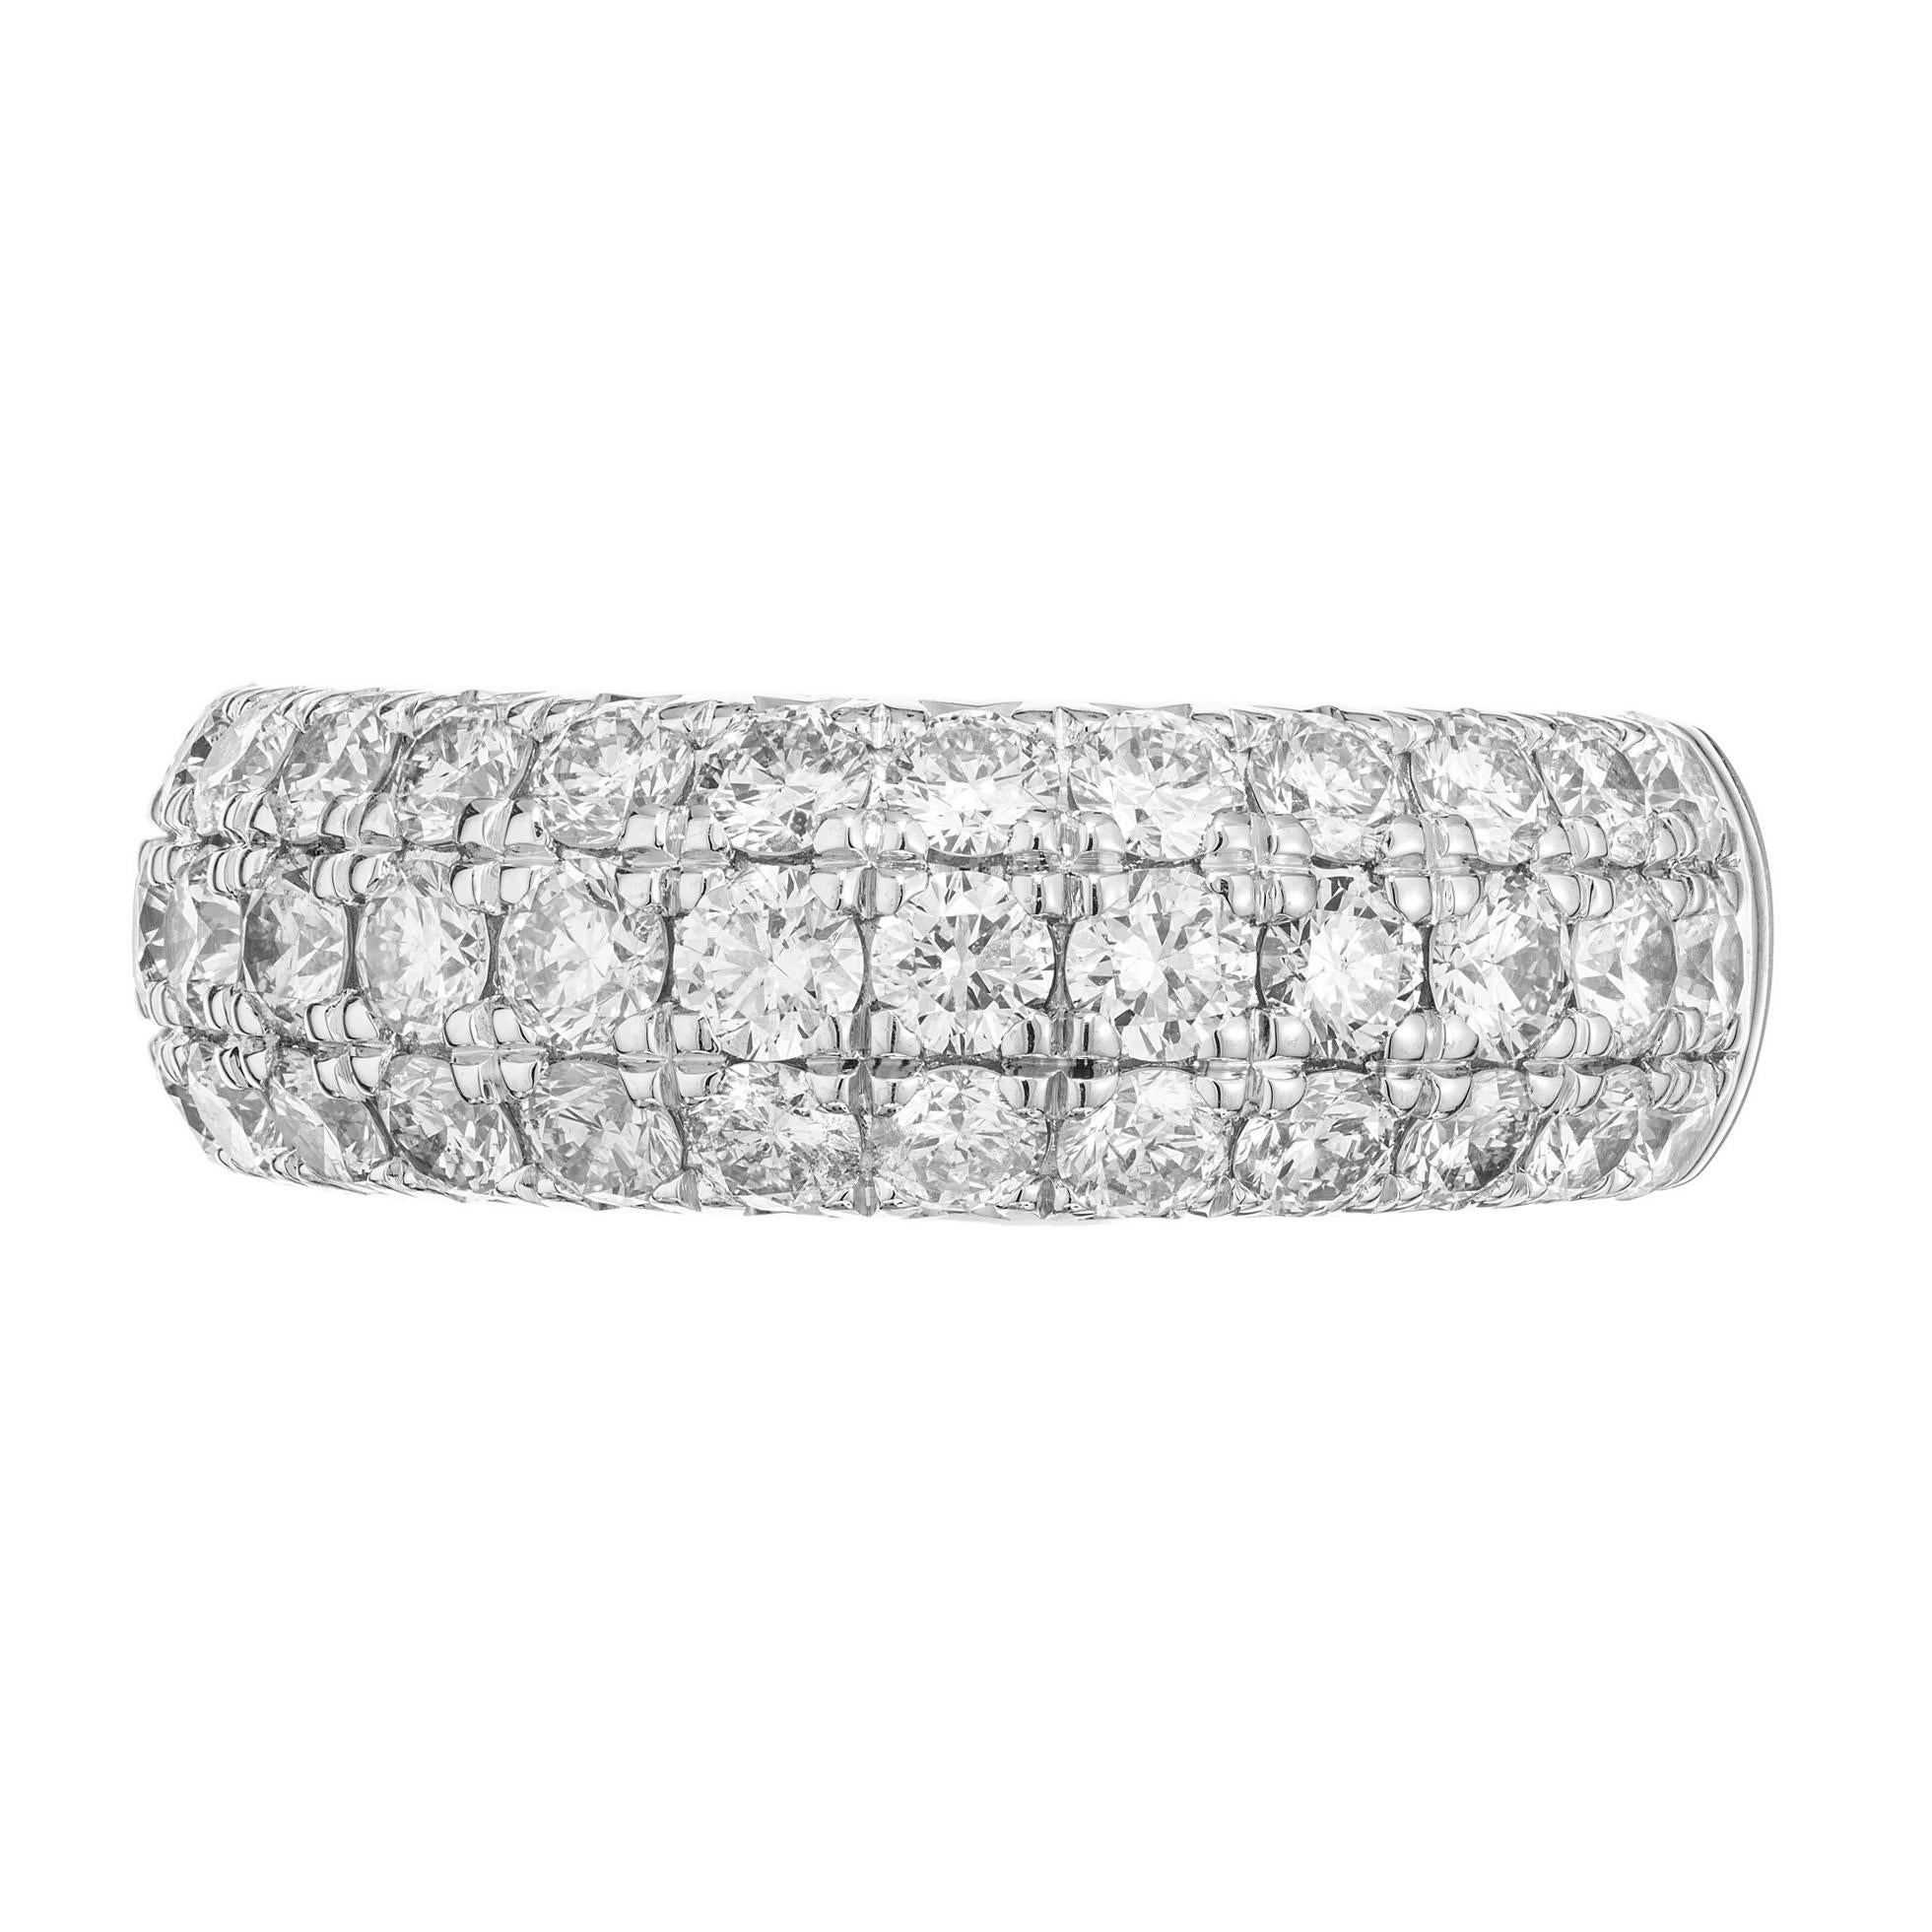 Diamantener Bandring. Dieser Ring besteht aus 3 Reihen runder Diamanten im Brillantschliff in einer Fassung aus 14 Karat Weißgold. 39 Diamanten mit einem ungefähren Gesamtgewicht von 2,00 Karat. Die Diamanten sind hell mit großer Brillanz, die die